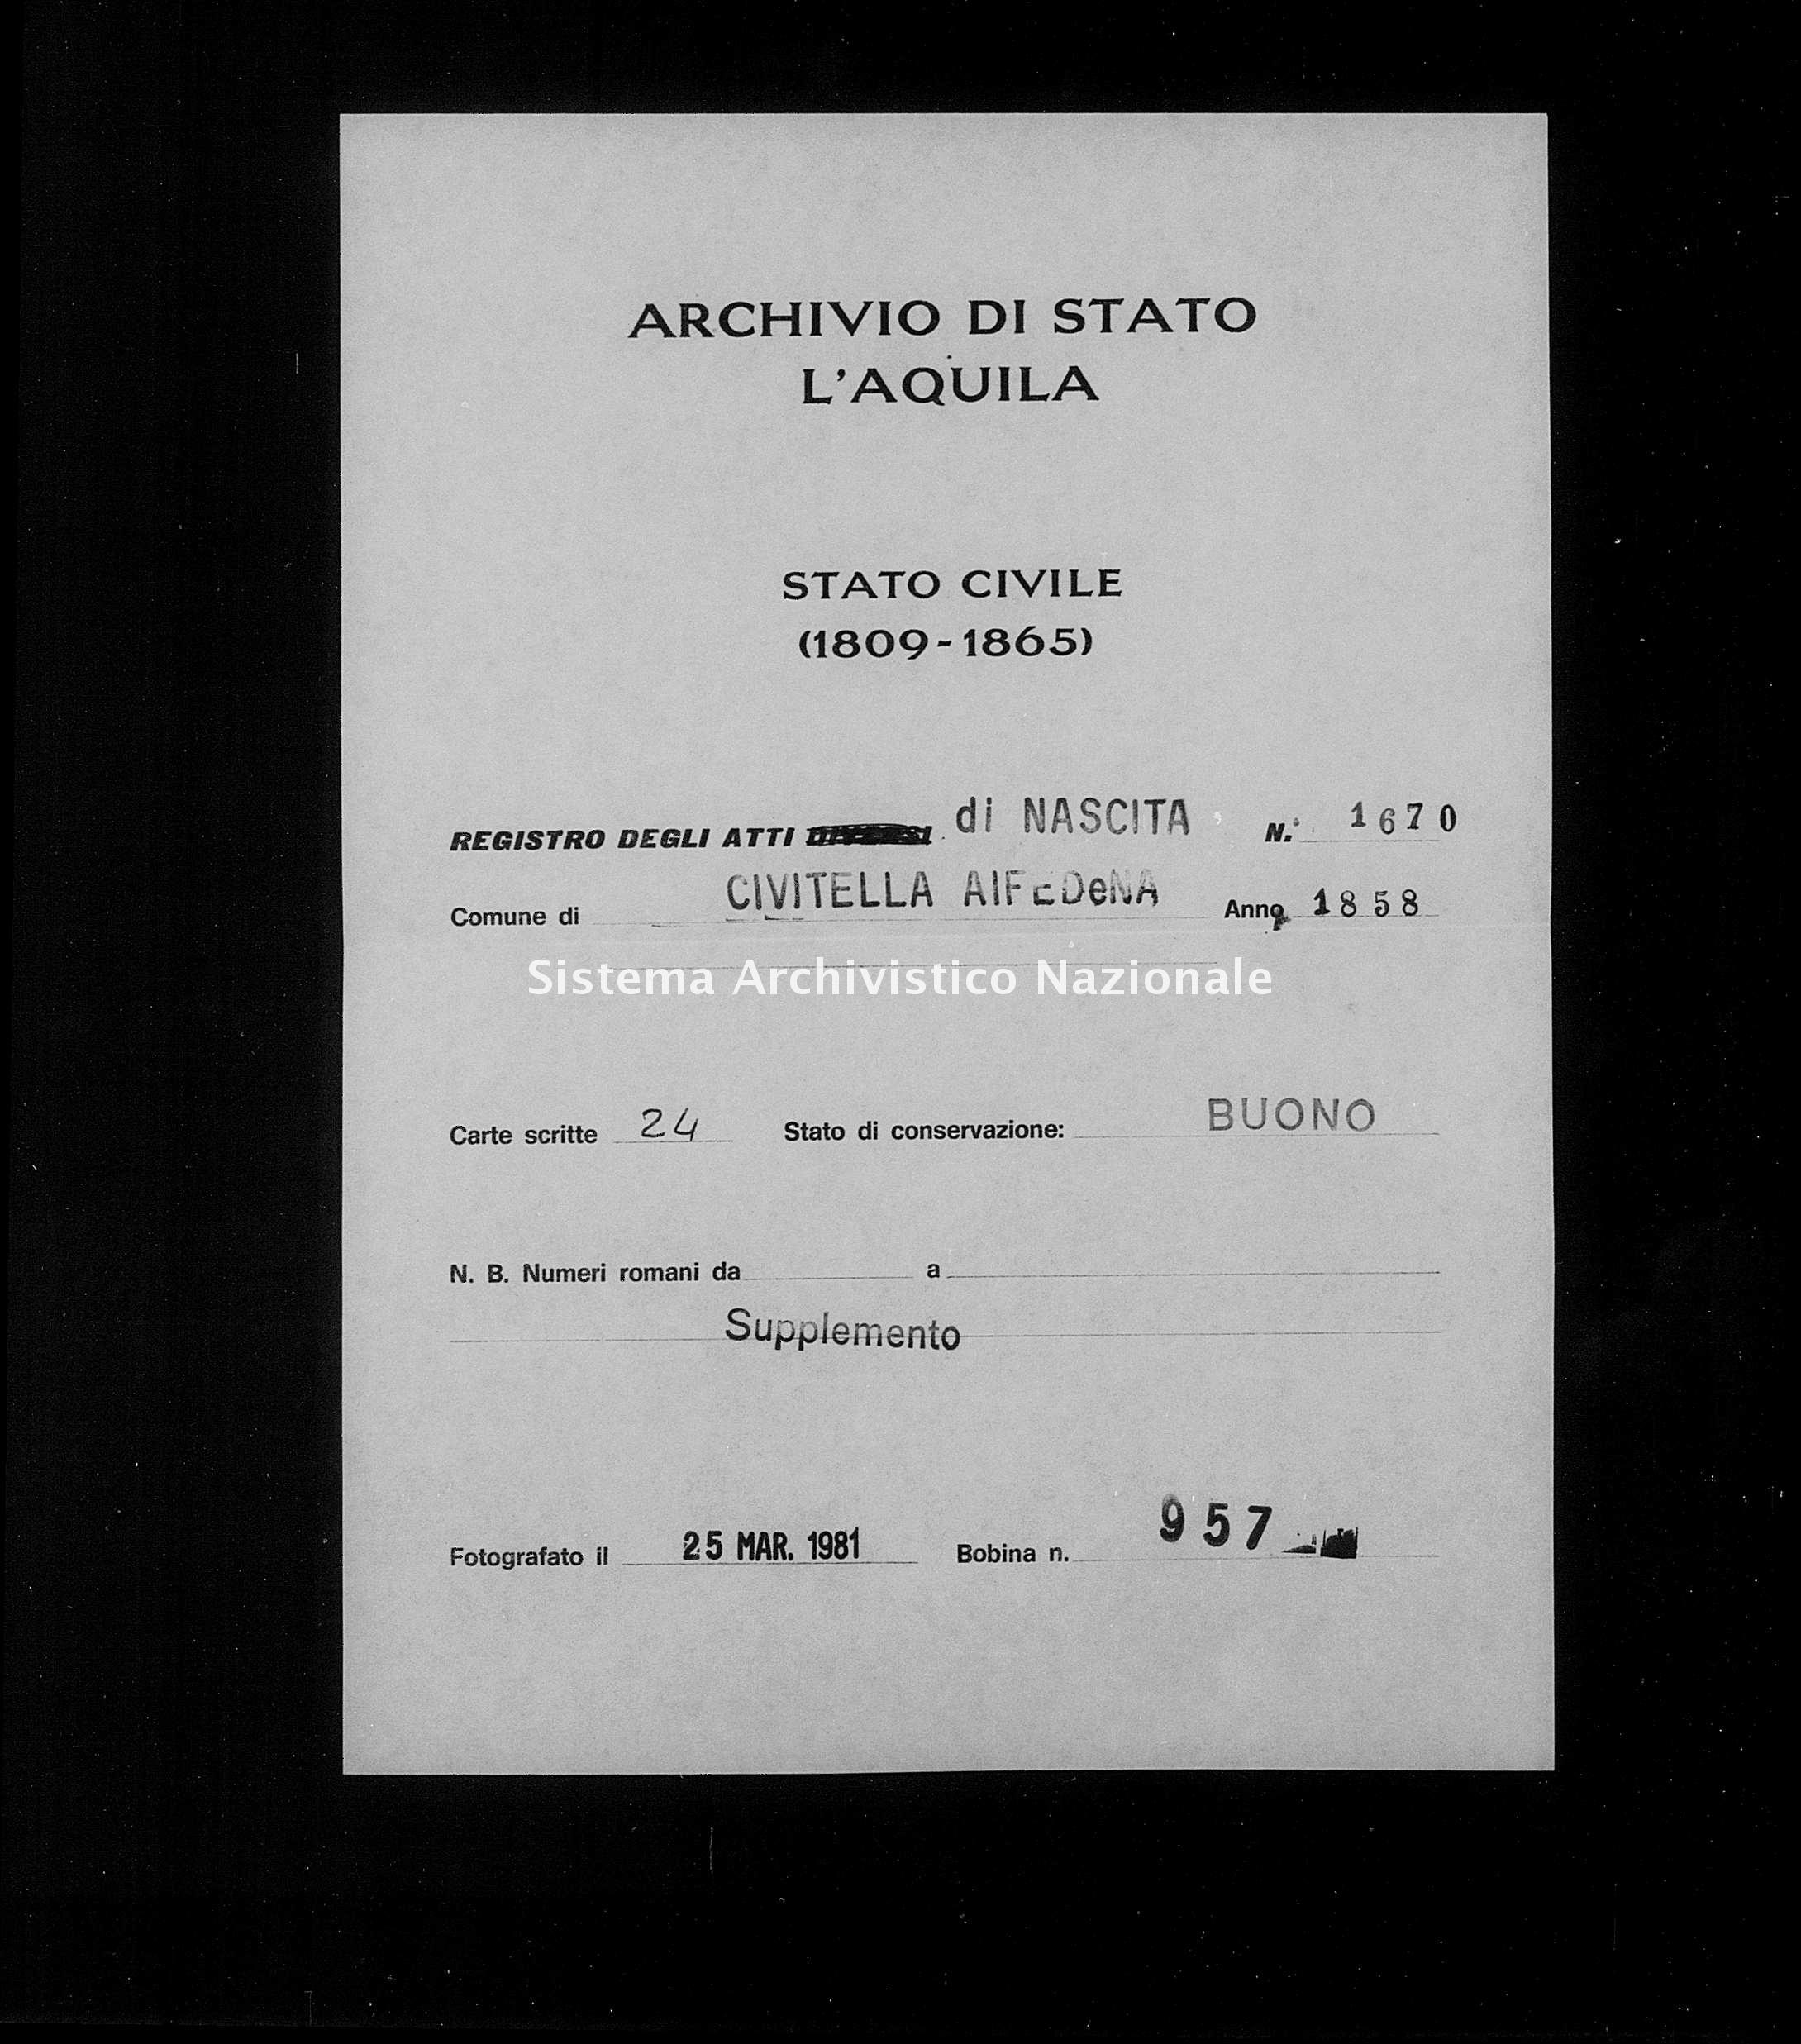 Archivio di stato di L'aquila - Stato civile della restaurazione - Civitella Alfedena - Nati, battesimi - 1858 - 1670 -